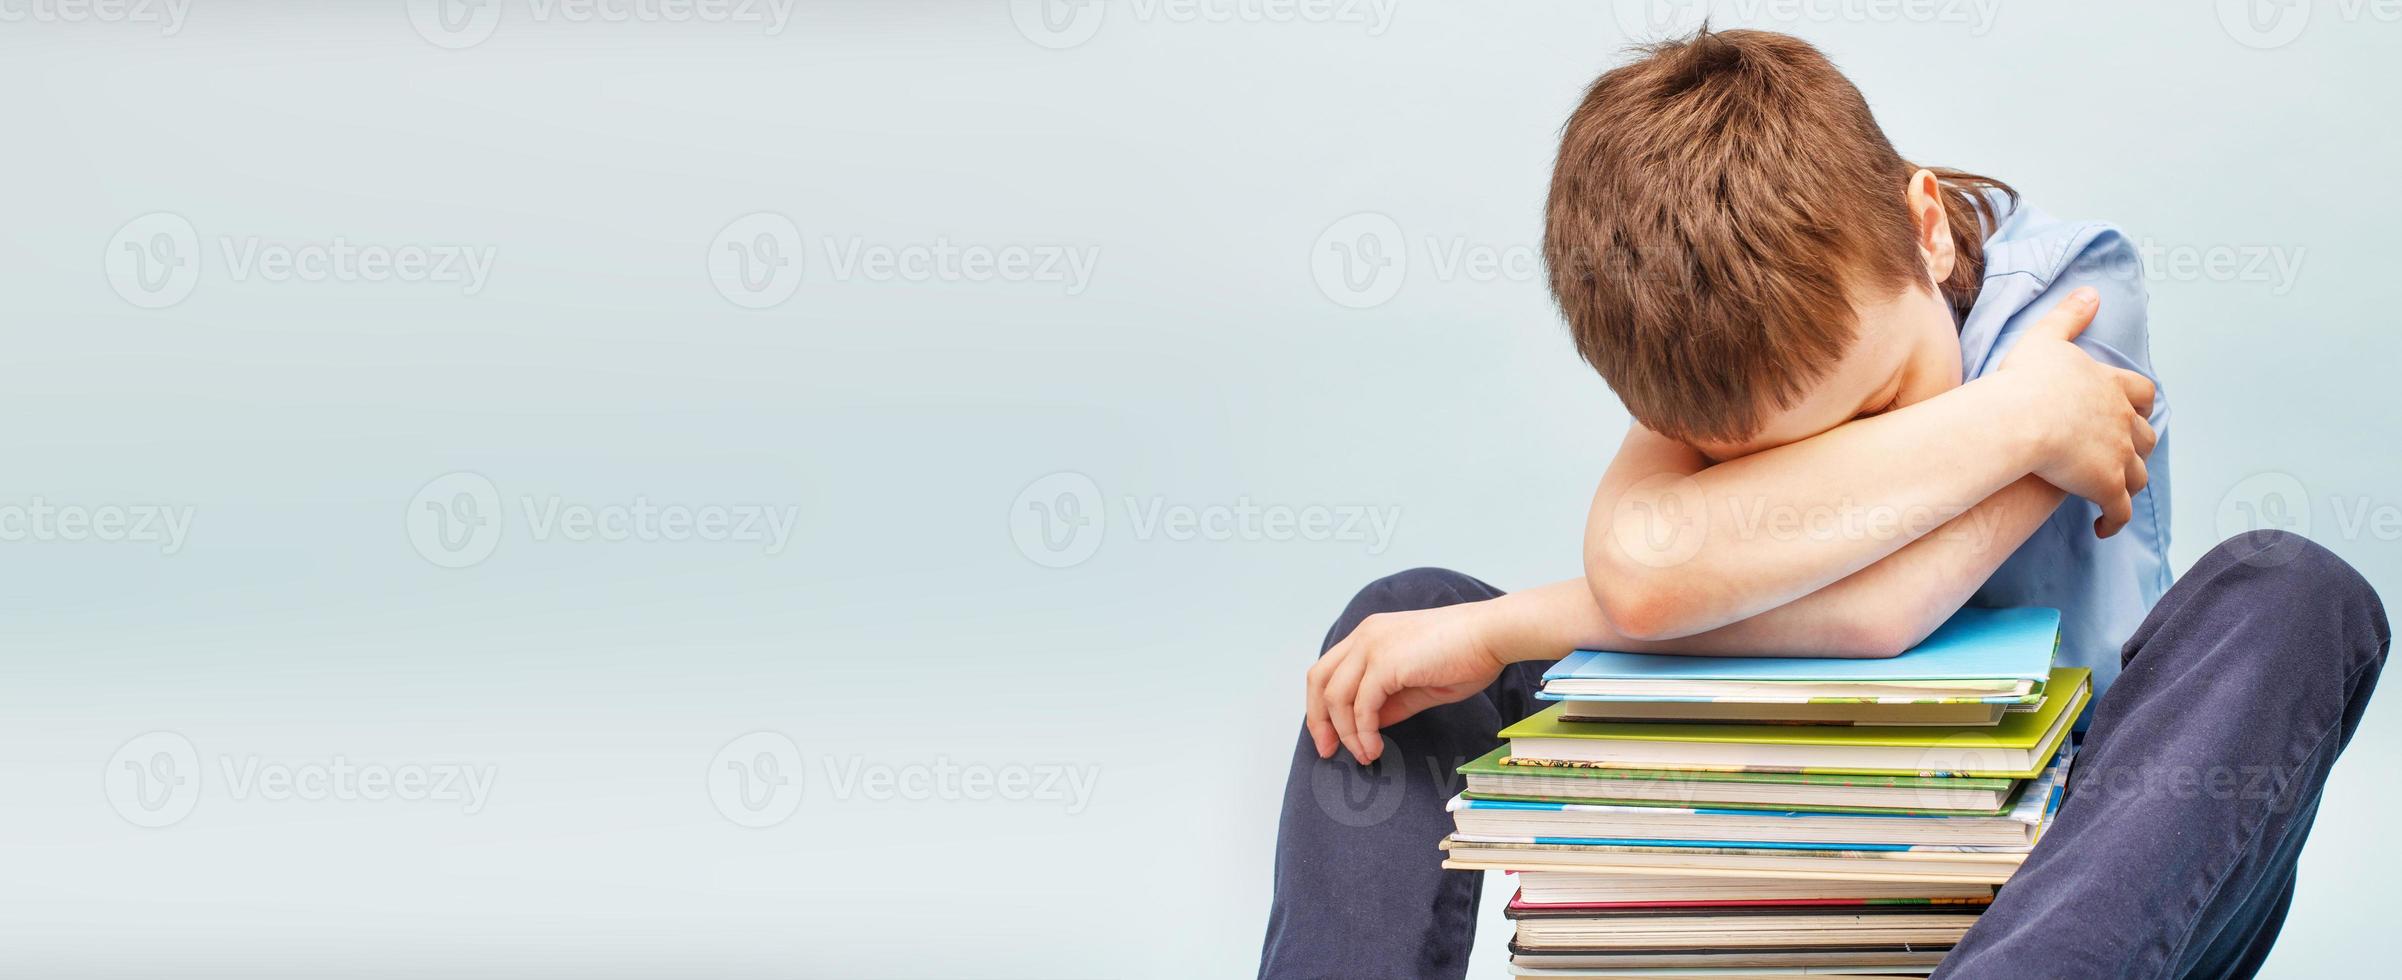 écolier bouleversé assis avec une pile de livres scolaires et couvre son visage avec les mains. garçon dormant sur une pile de manuels photo